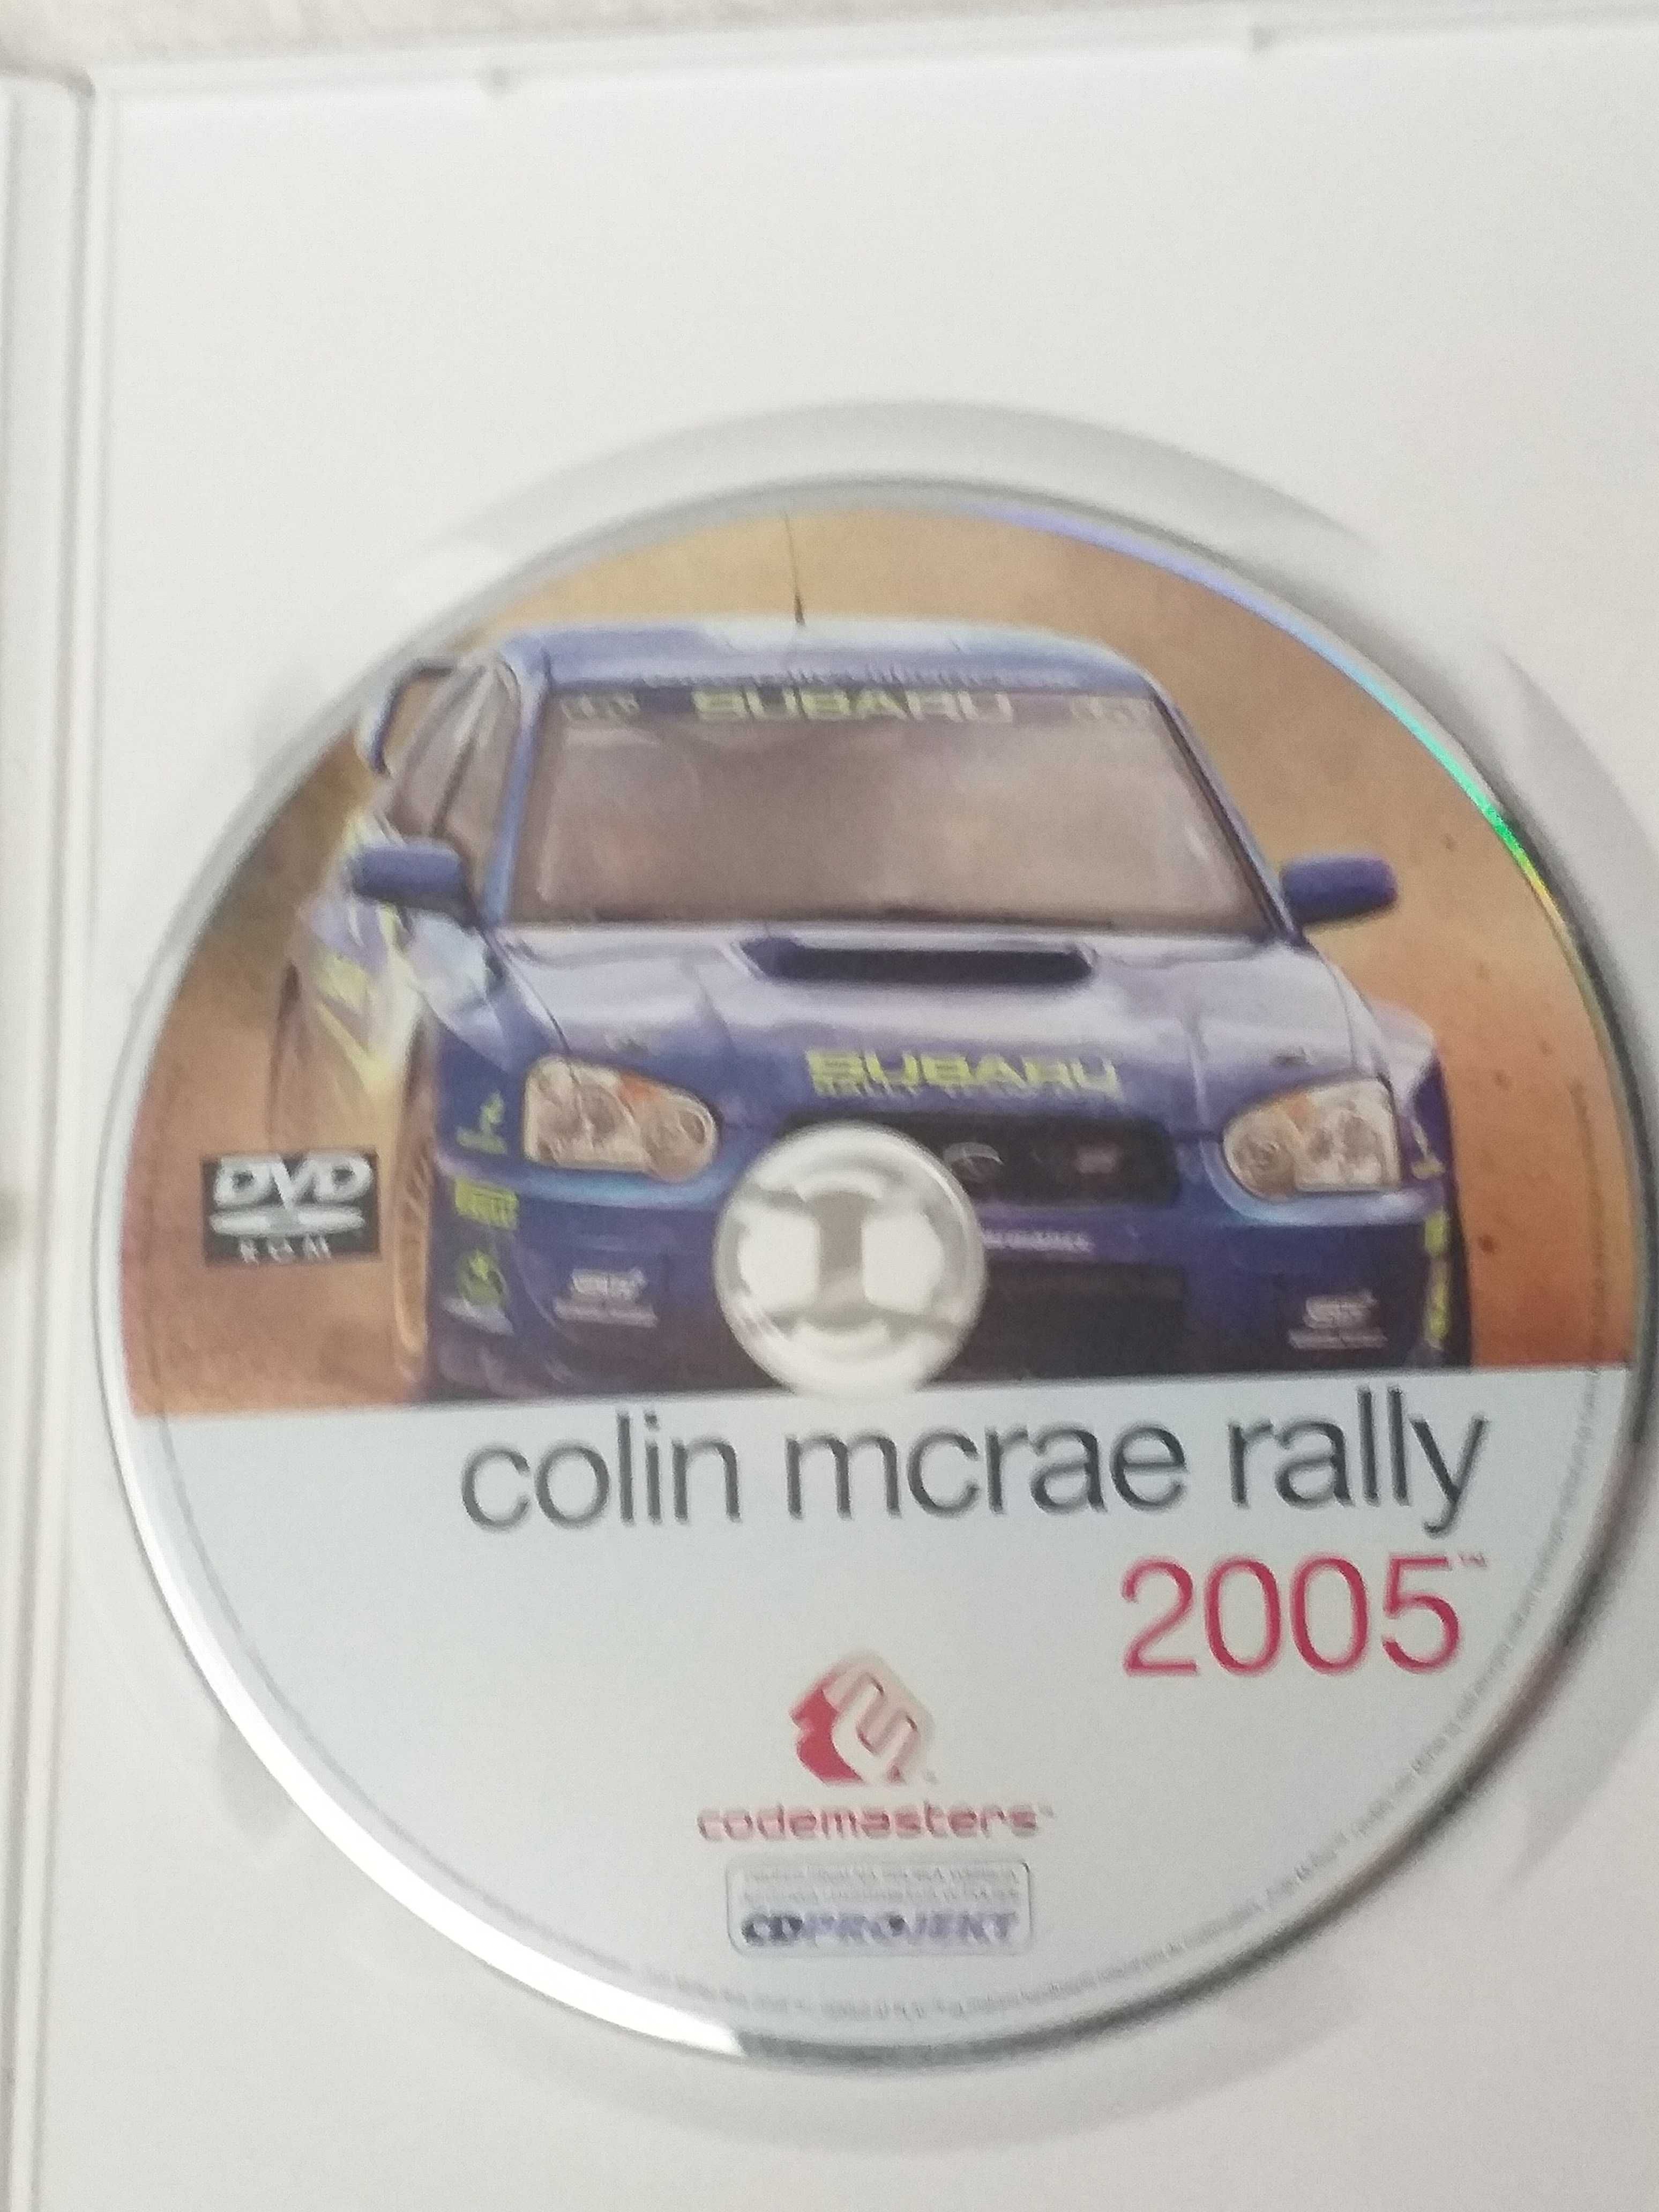 Gra komputerowa Colin Mcrae Rally 2005